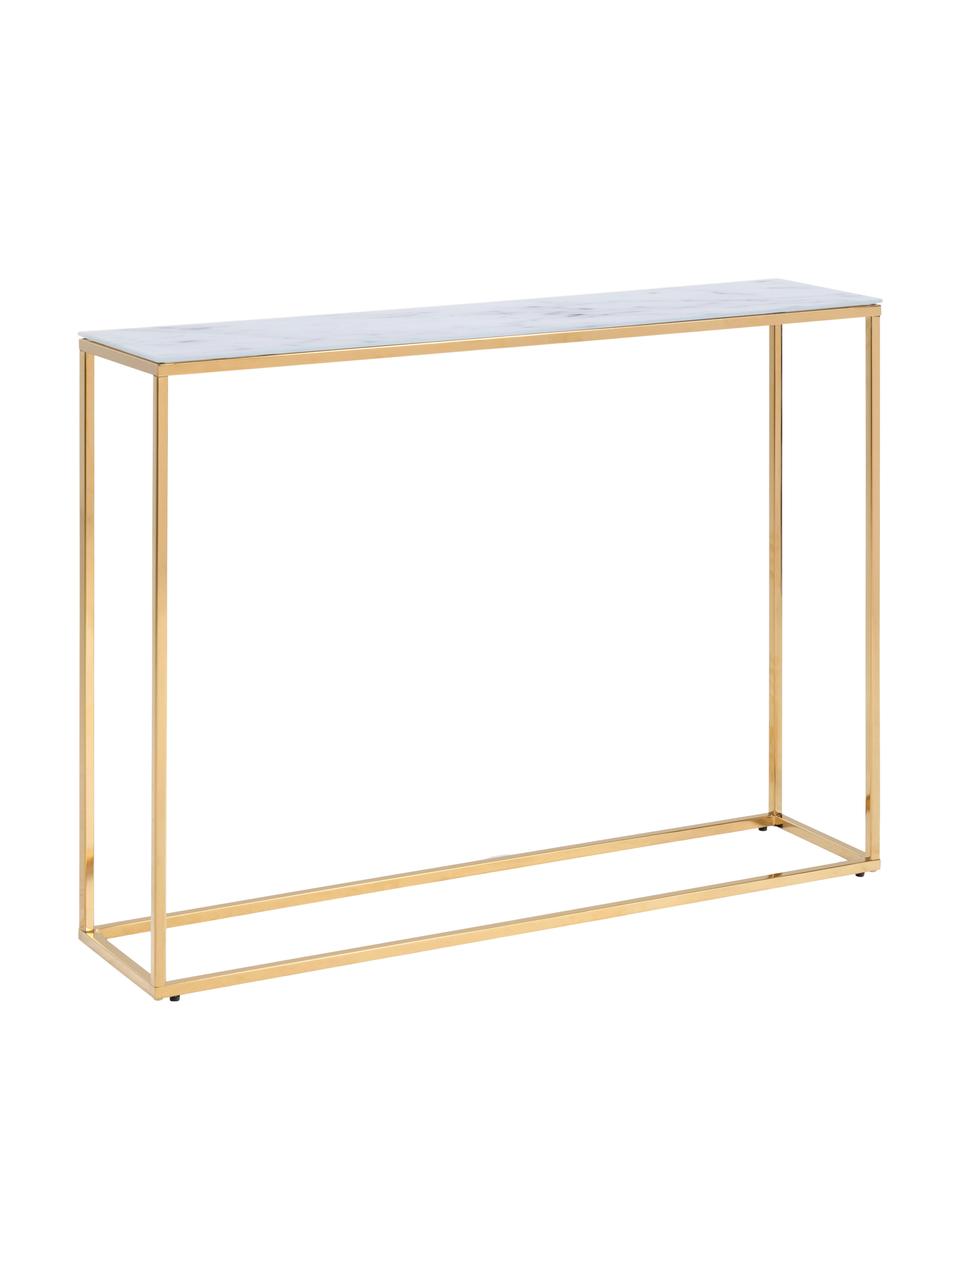 Konzolový stolek s mramorovanou deskou Aruba, Mramorový vzhled, bílá, zlatá, Š 110 cm, V 81 cm